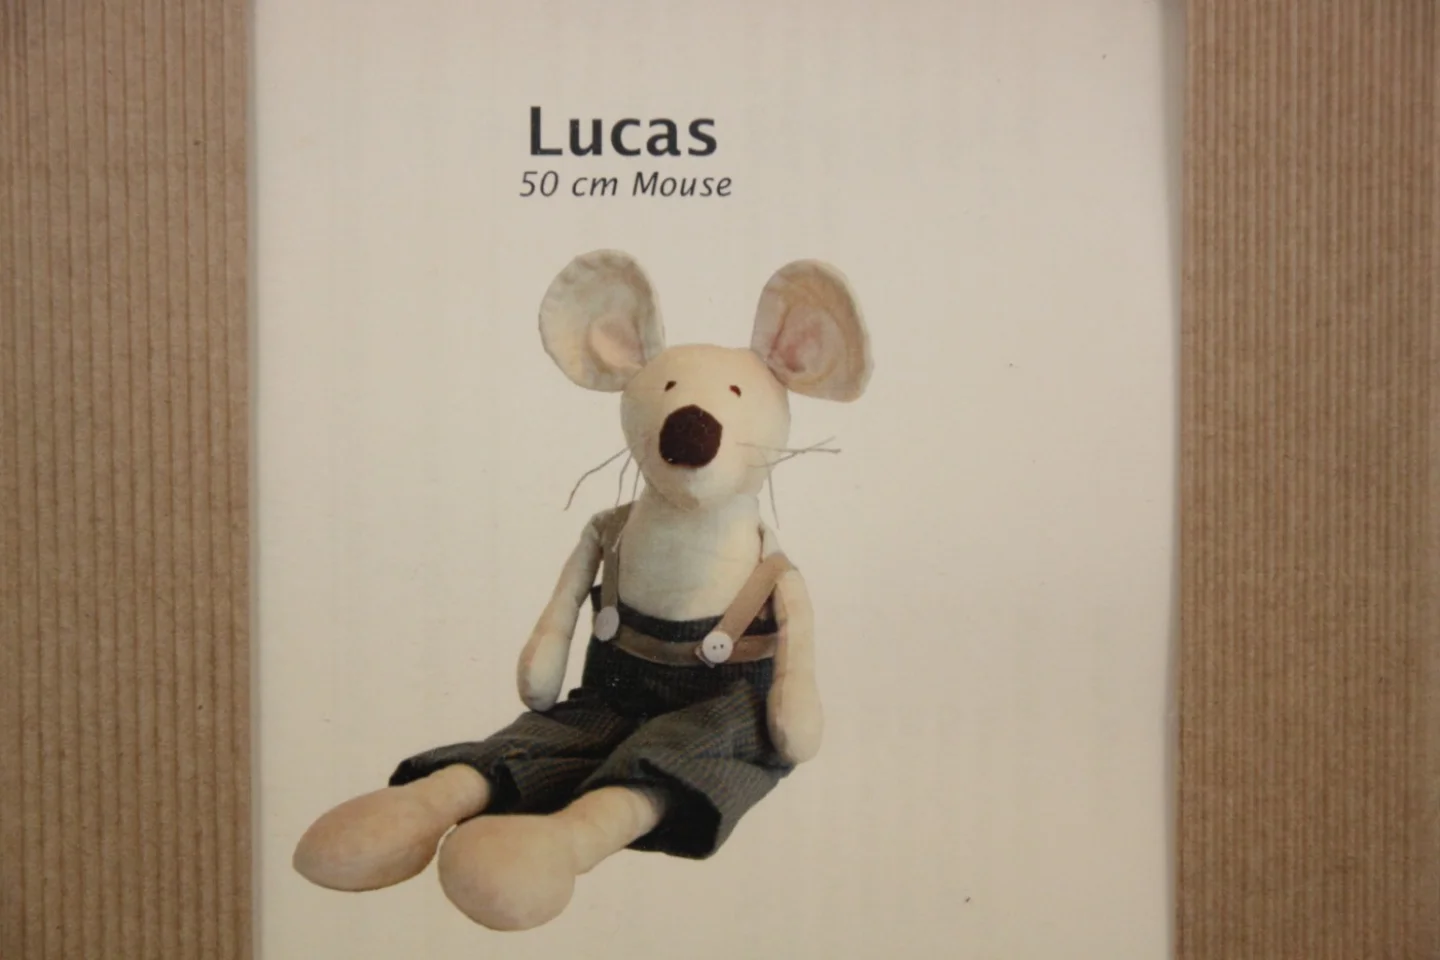 Pakketje-Lucas-jongetjesmuis-50 cm groot.